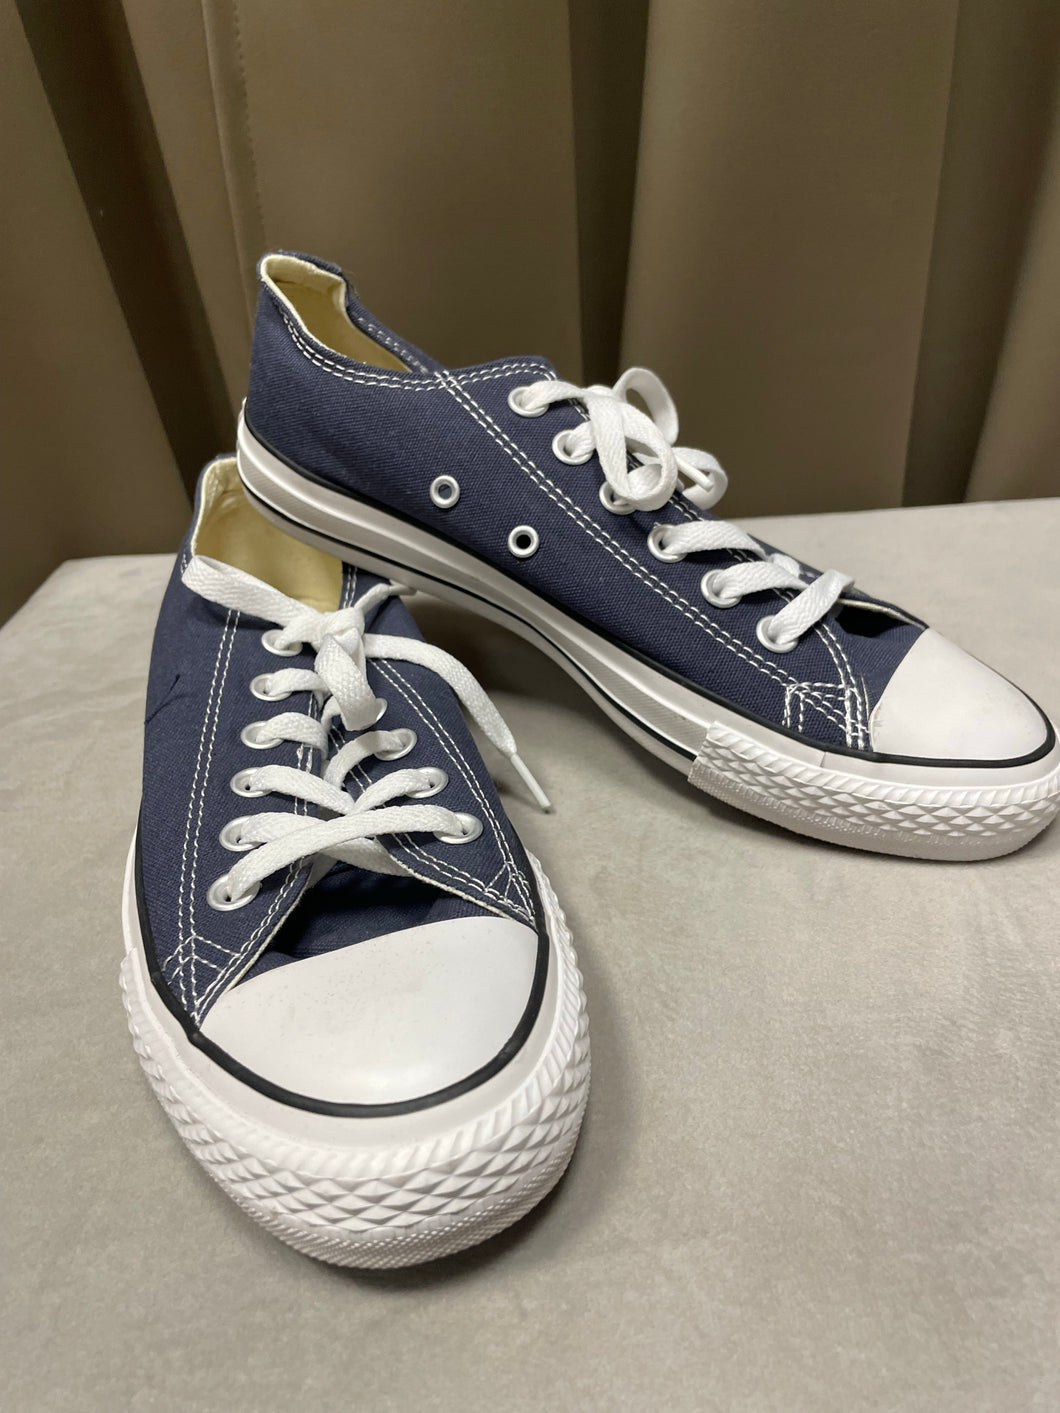 Dam skor Converse blå storlek 38